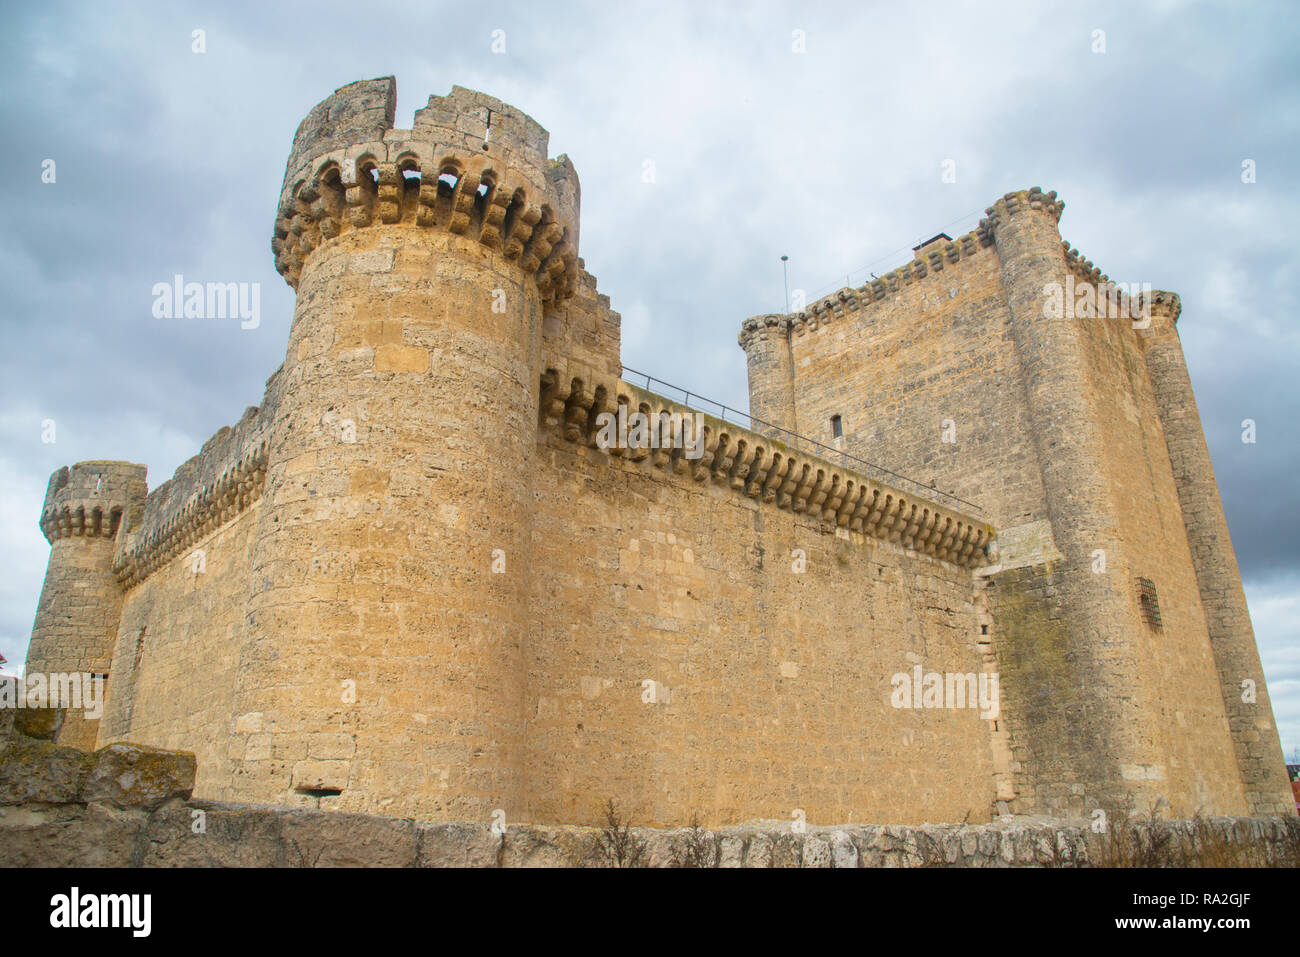 Medieval castle. Villafuerte de Esgueva, Valladolid province, Castilla Leon, Spain. Stock Photo